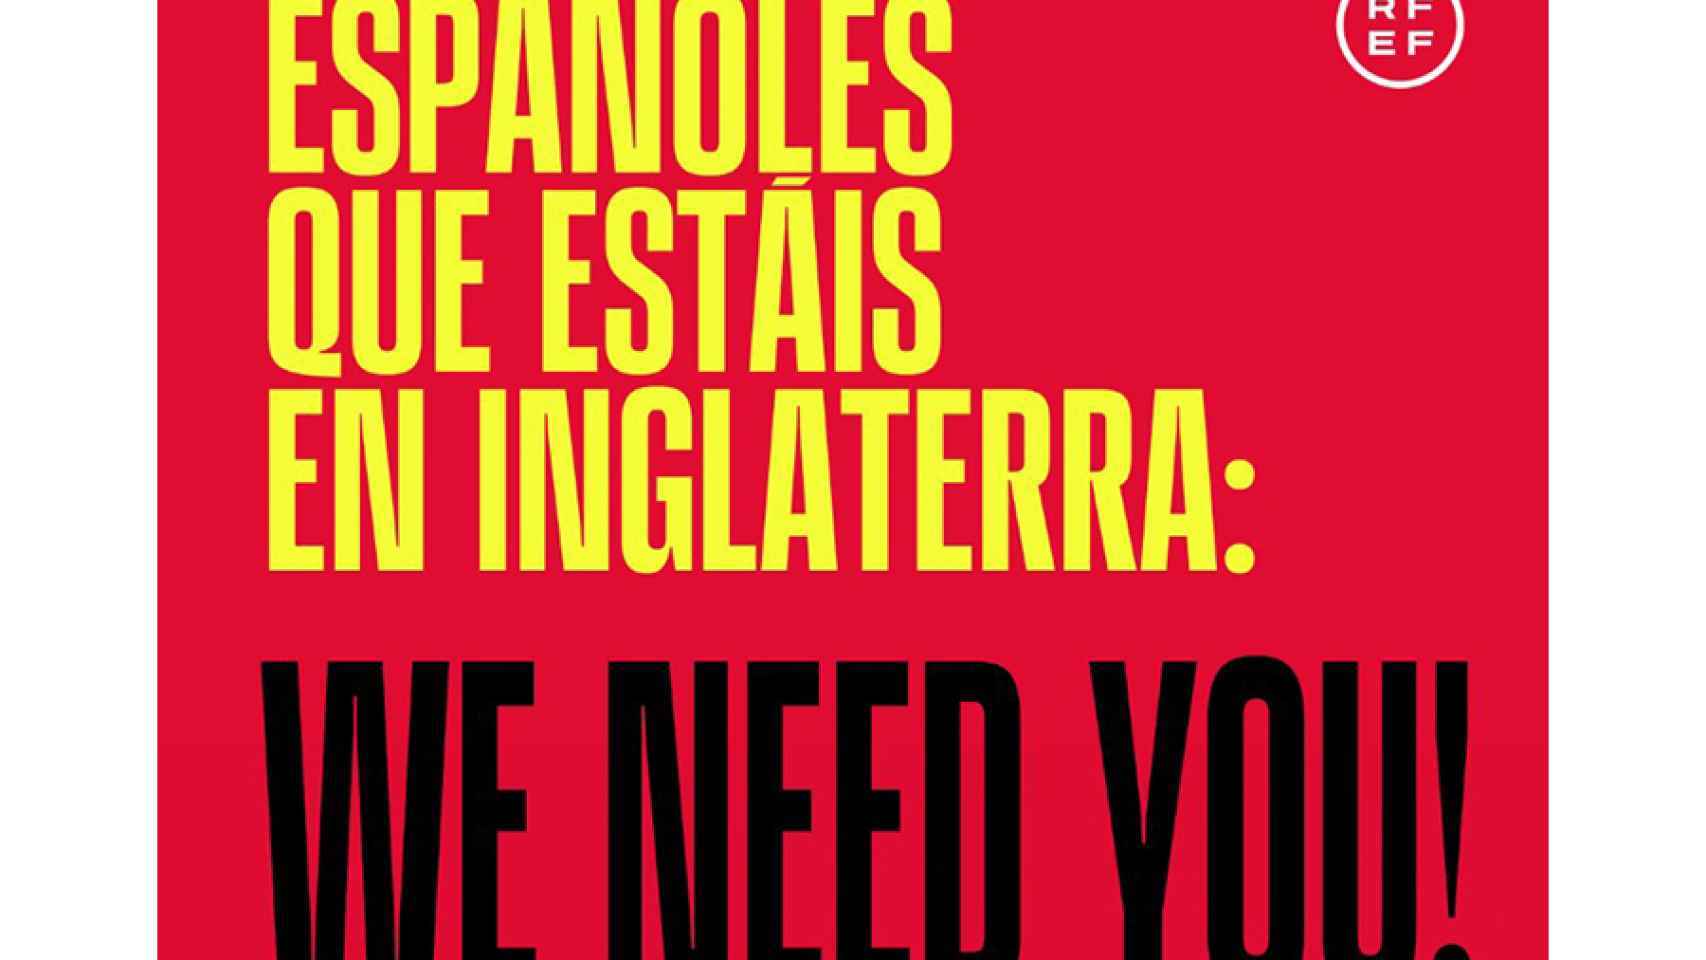 La campaña de la Selección para animar a los españoles en Inglaterra para que acudan al partido de semifinales